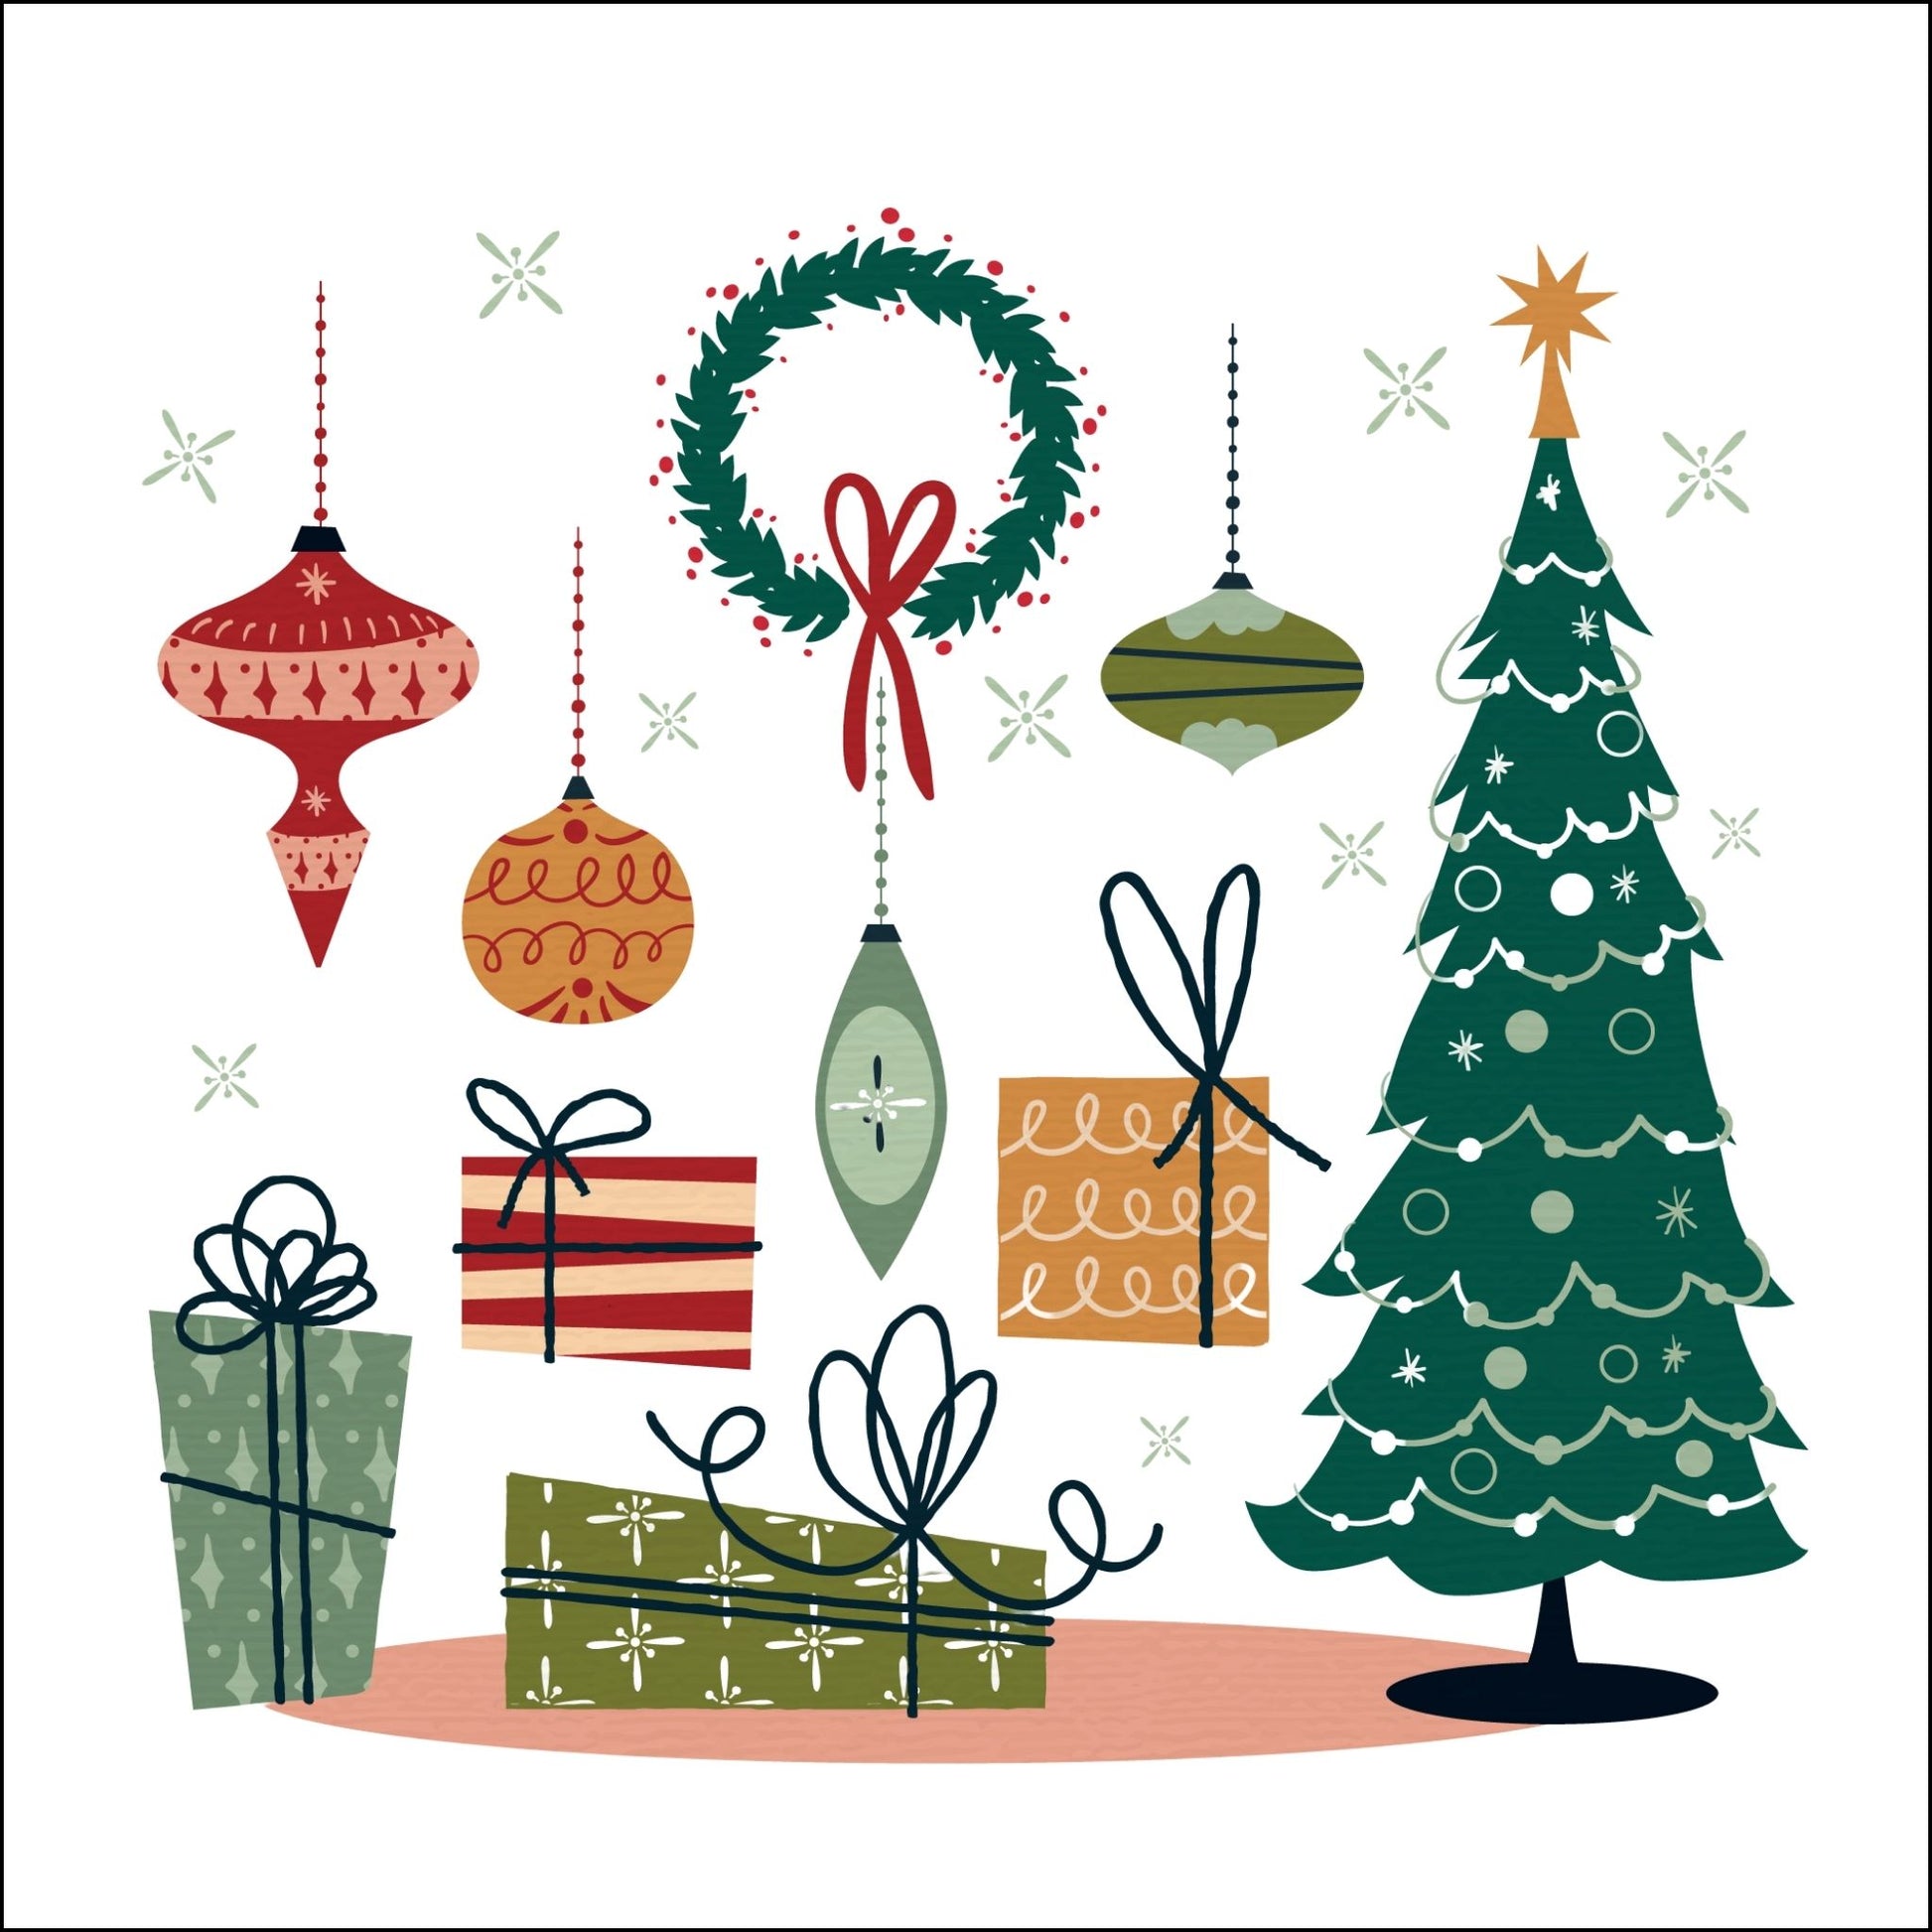 Dekorativt julemotiv av håndtegnet julefigurer av juletre, julepakker, julekuler og julekrans.